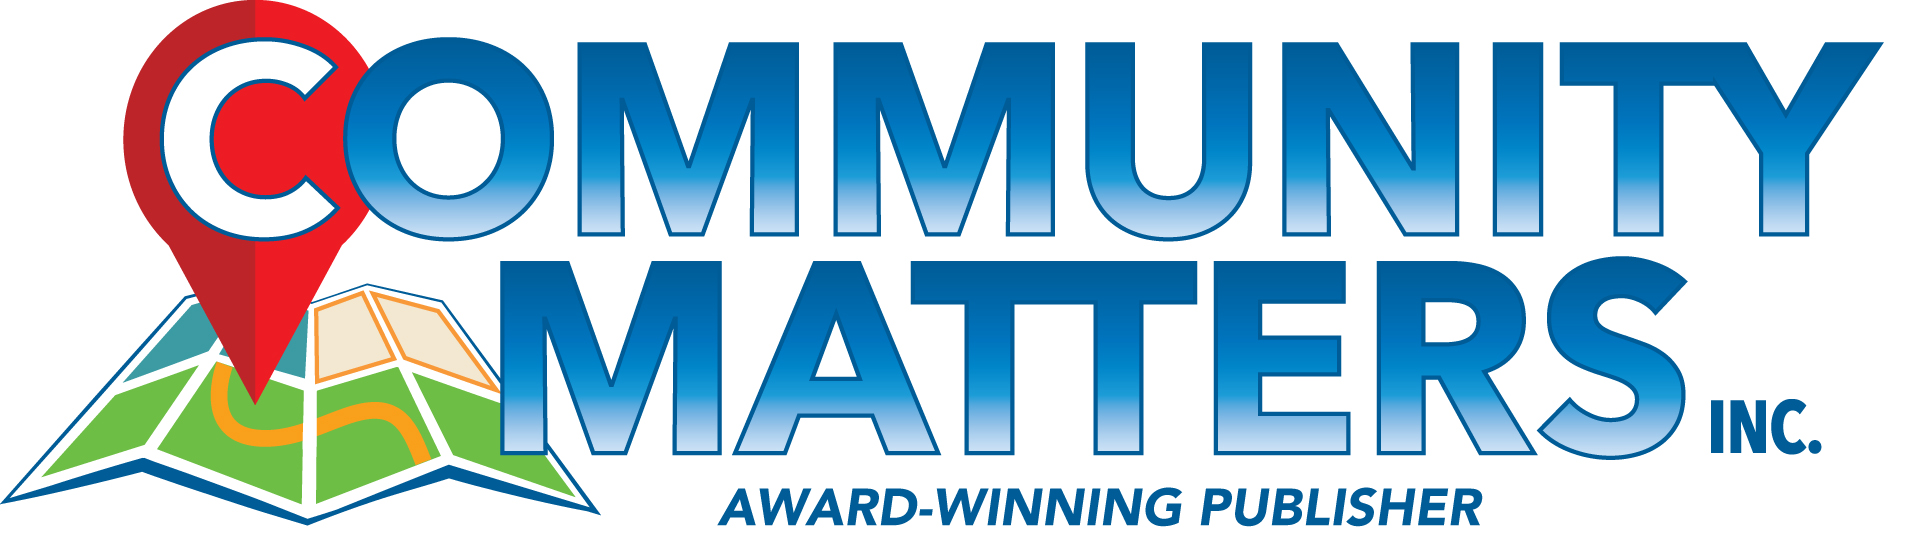 Community Matters, Inc